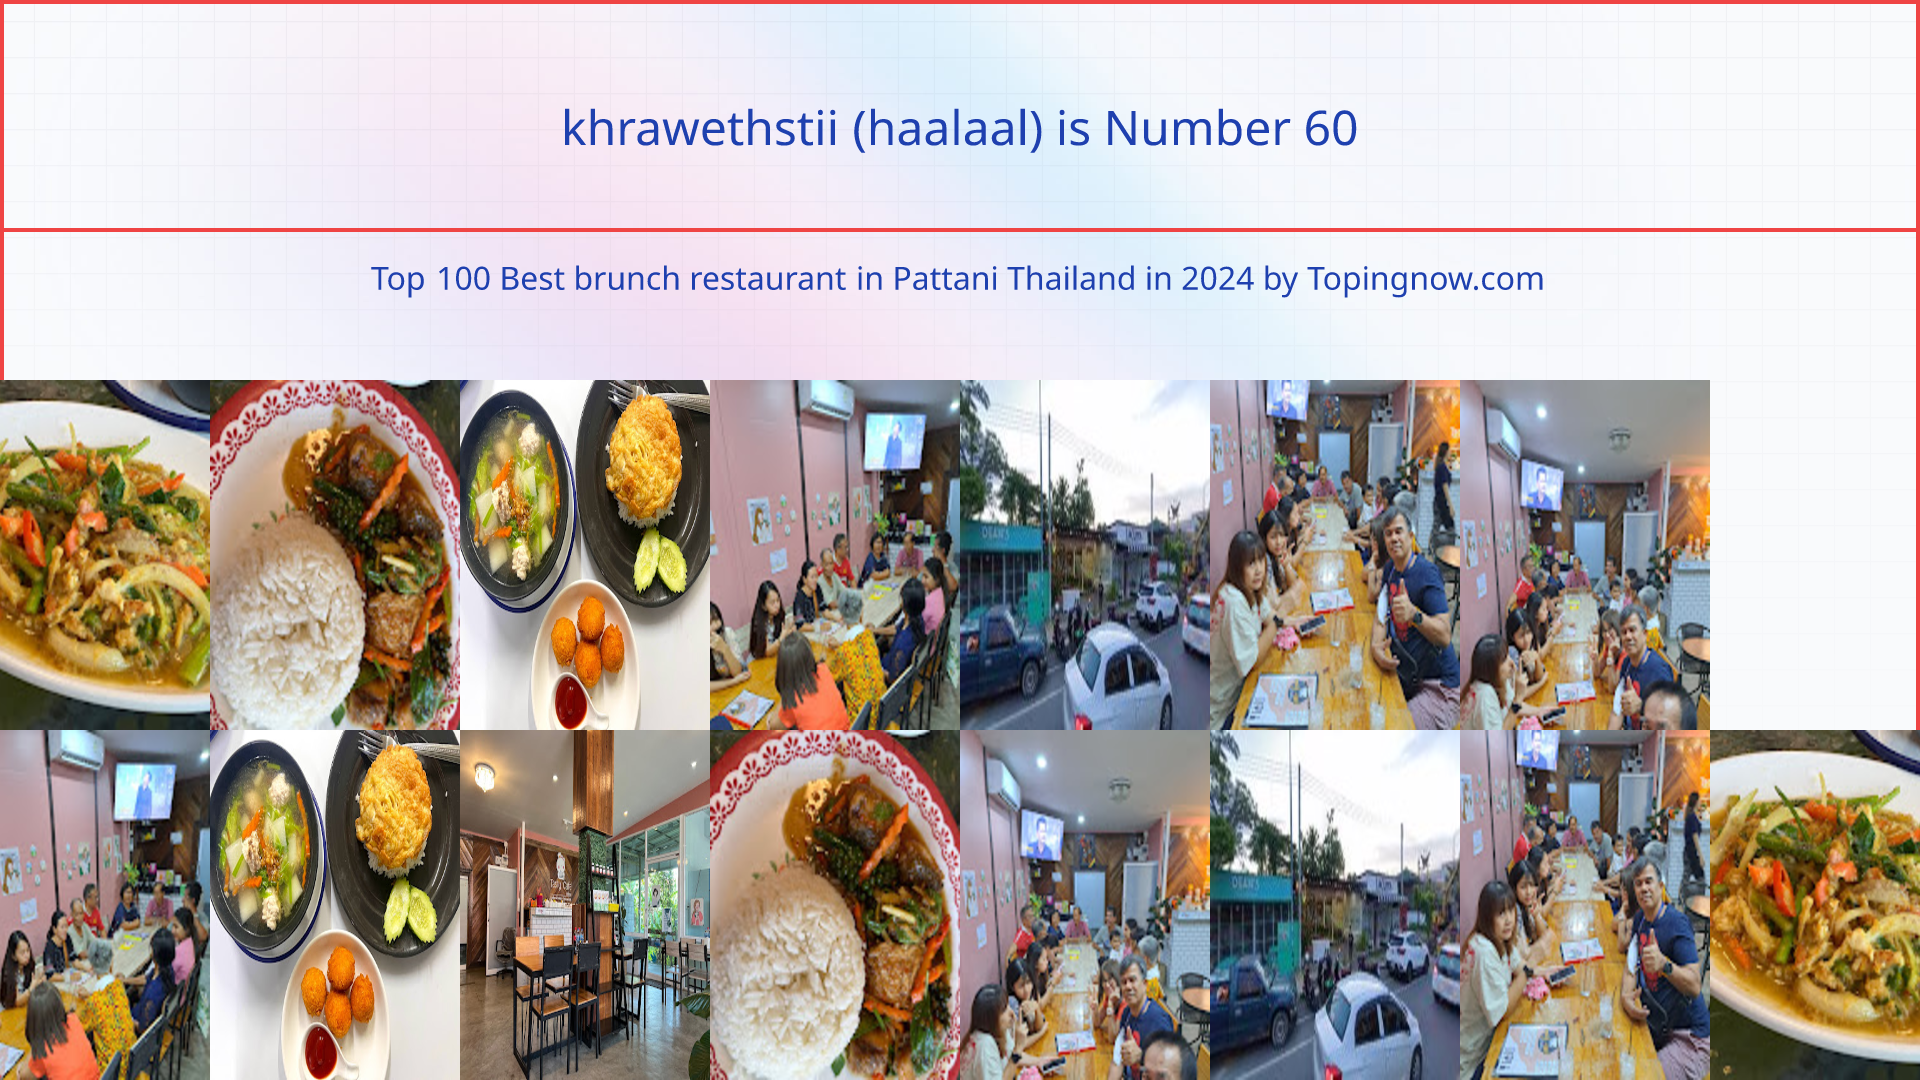 khrawethstii (haalaal): Top 100 Best brunch restaurant in Pattani Thailand in 2024